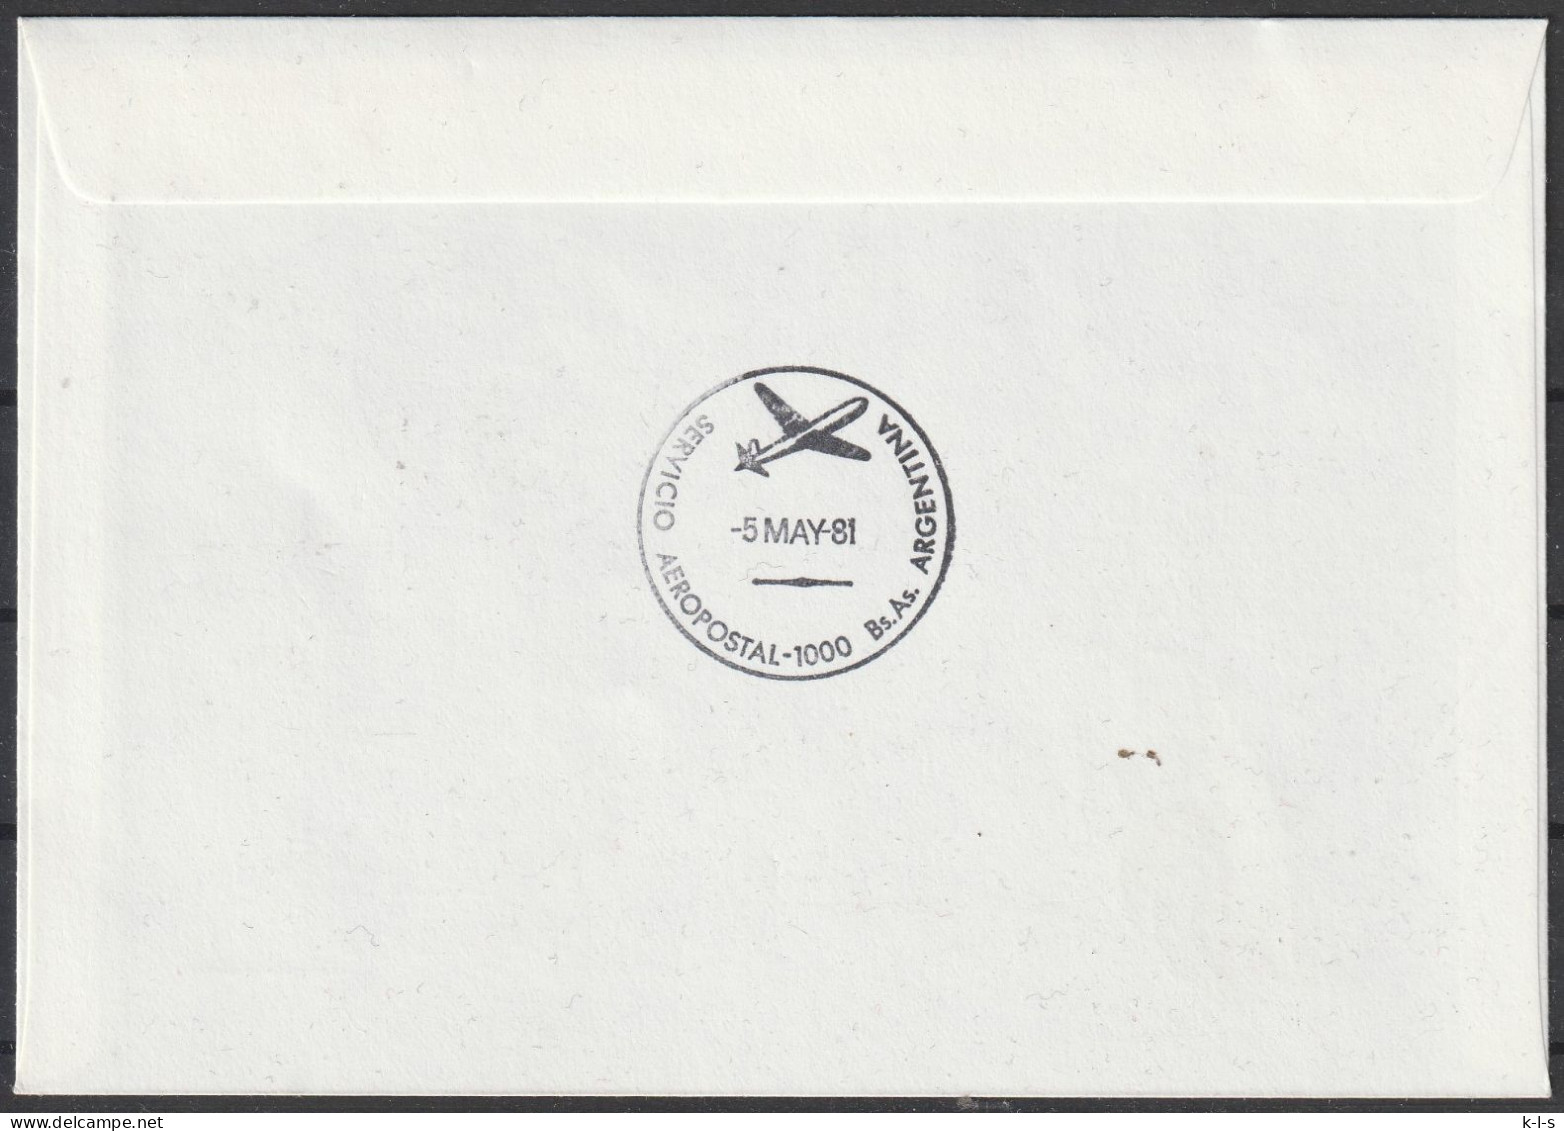 Schweiz: 1981, Fernbrief In EF, Mi. Nr. 1196, SoStpl. Zu Den Erinnerungsflug Am 30.04.1981, ZÜRICH-BUENOS AIRES - Erst- U. Sonderflugbriefe